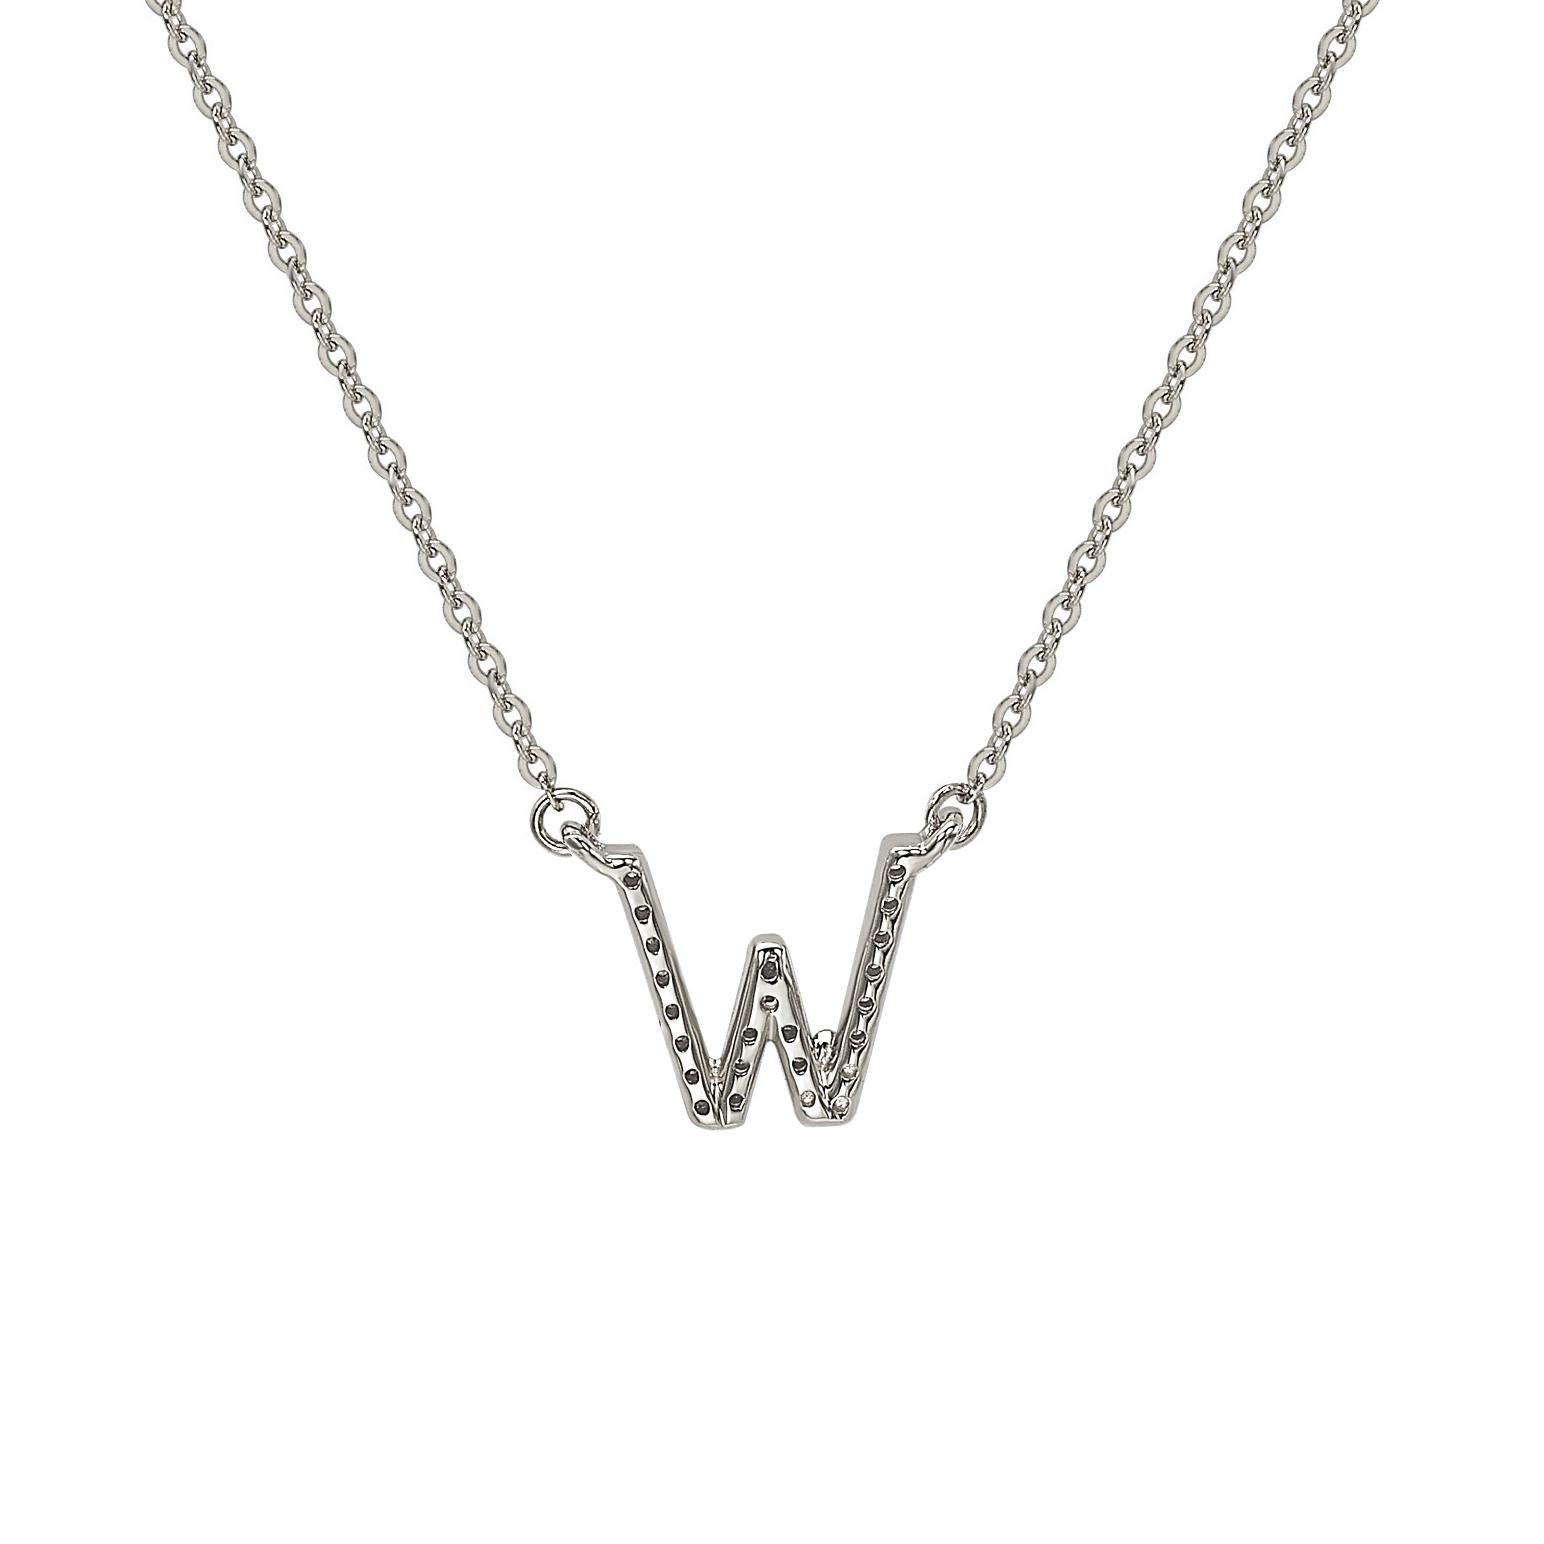 Questa splendida collana personalizzata con lettera di Suzy Levian è caratterizzata da diamanti naturali incastonati a mano in oro bianco da 14 carati. È il regalo personalizzato perfetto per far sapere a una persona speciale che stai pensando a